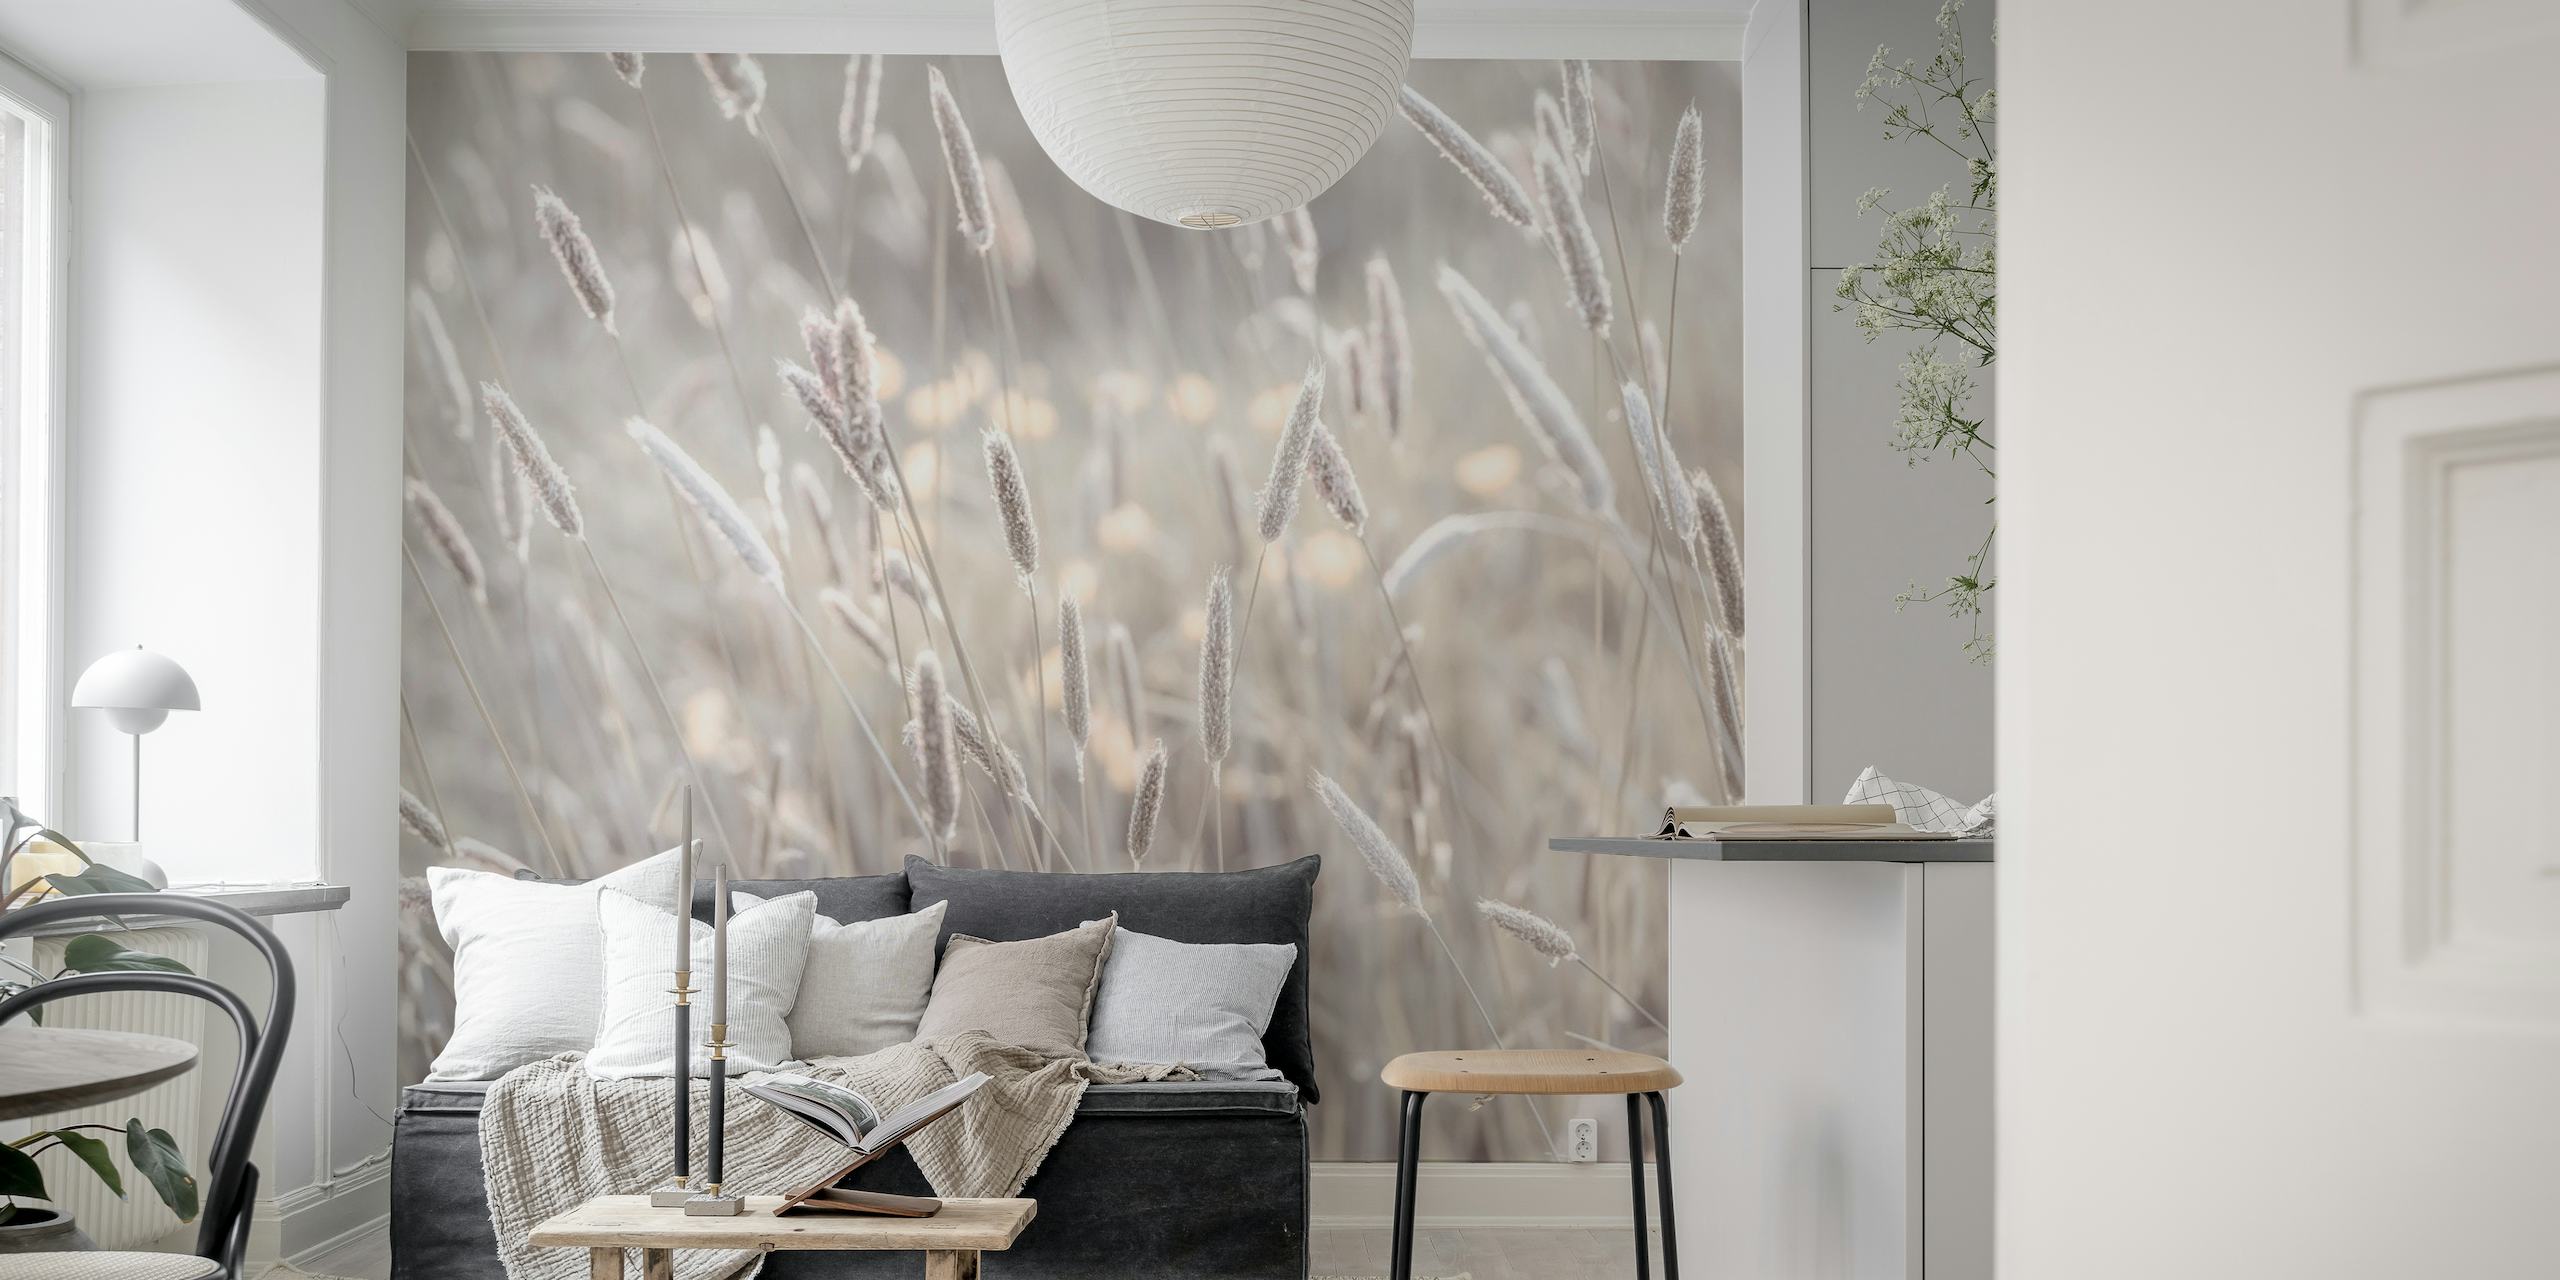 Wandbild „Meadow's Bliss“ in sanften Grau- und Cremetönen zeigt ruhige Wiesenbilder